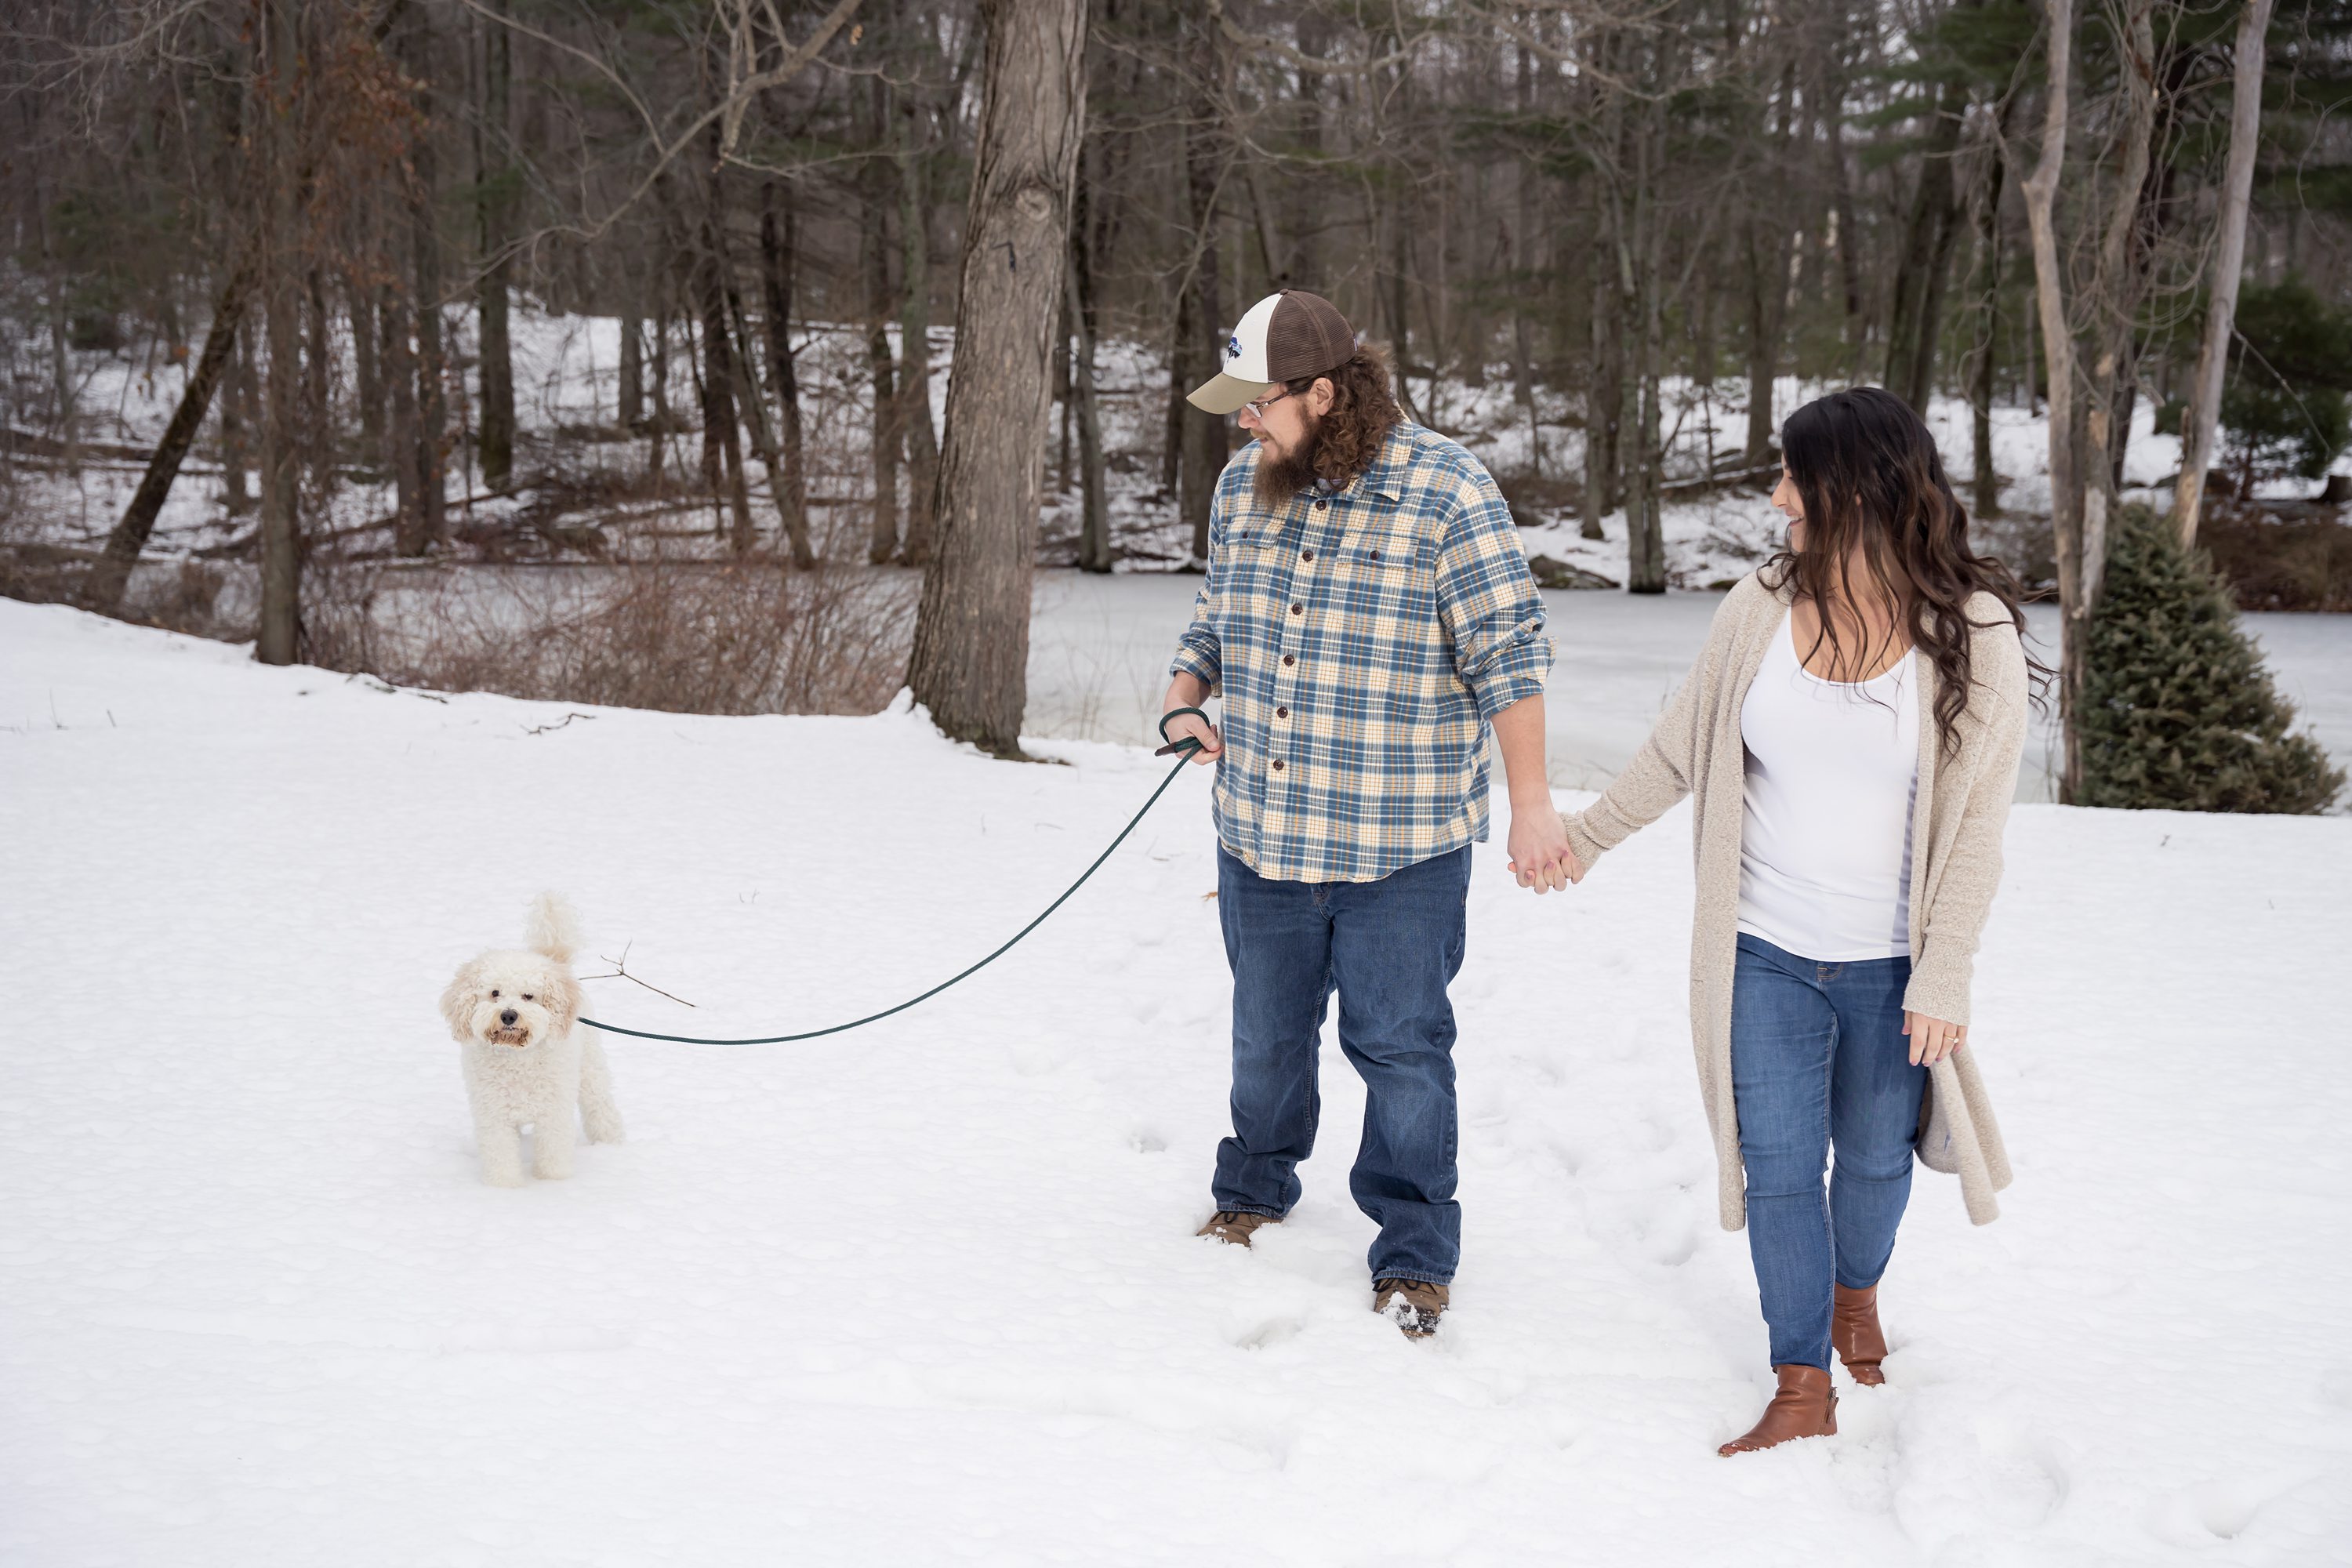 Sharon Wedding Photographer,Providence Wedding Photographer,Engagement Session with dog,Incorporating Dogs at Engagement Session,Massachusetts Engagement Photographer